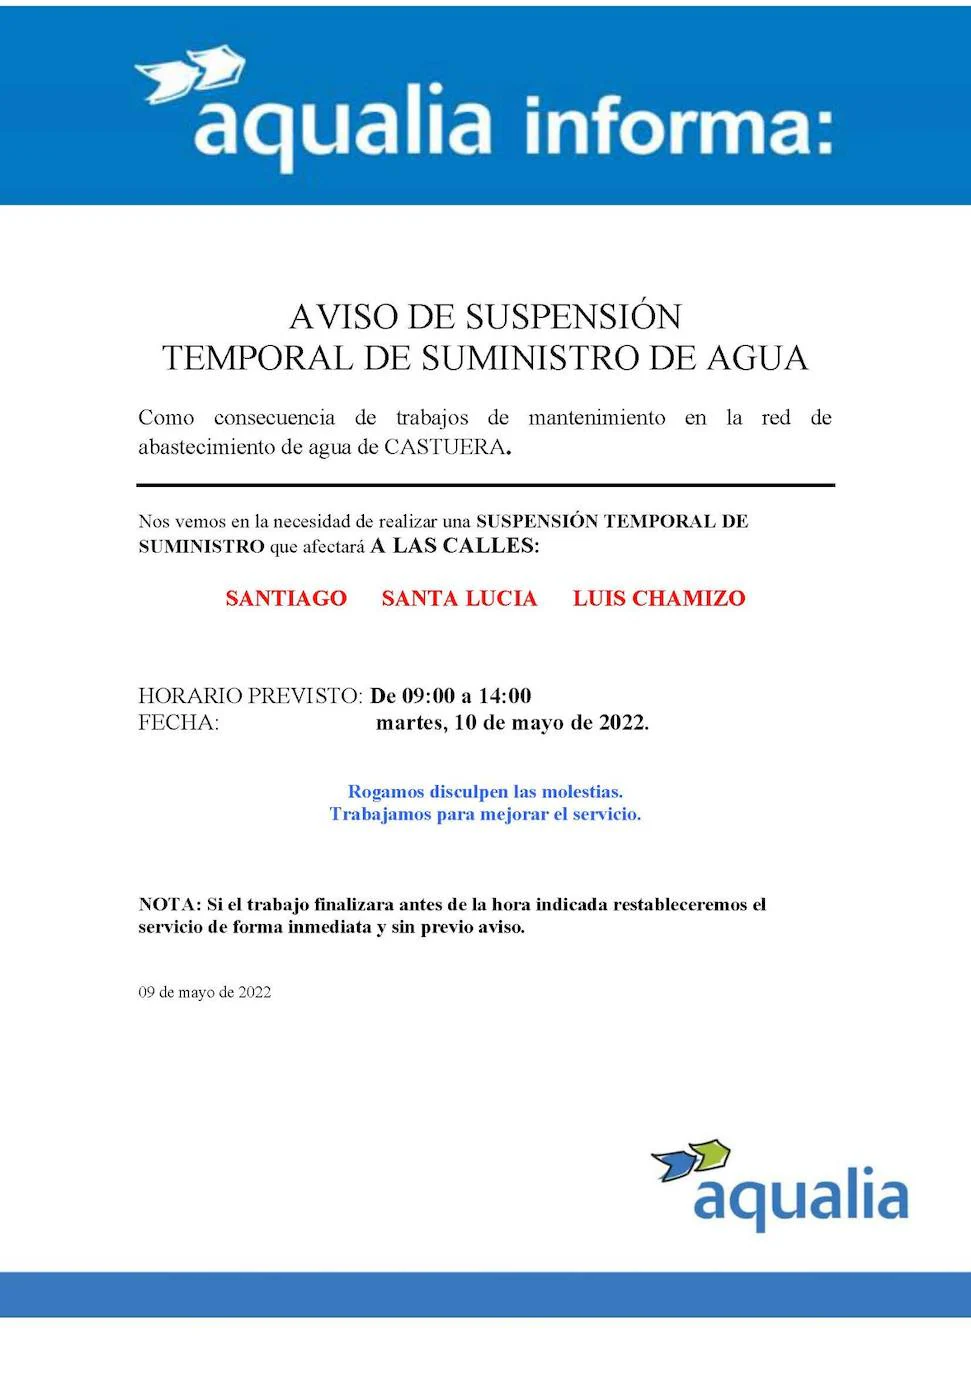 Aqualia anuncia un corte temporal de suministro de agua en las calles Luis Chamizo, Santa Lucía y Santiago de Castuera